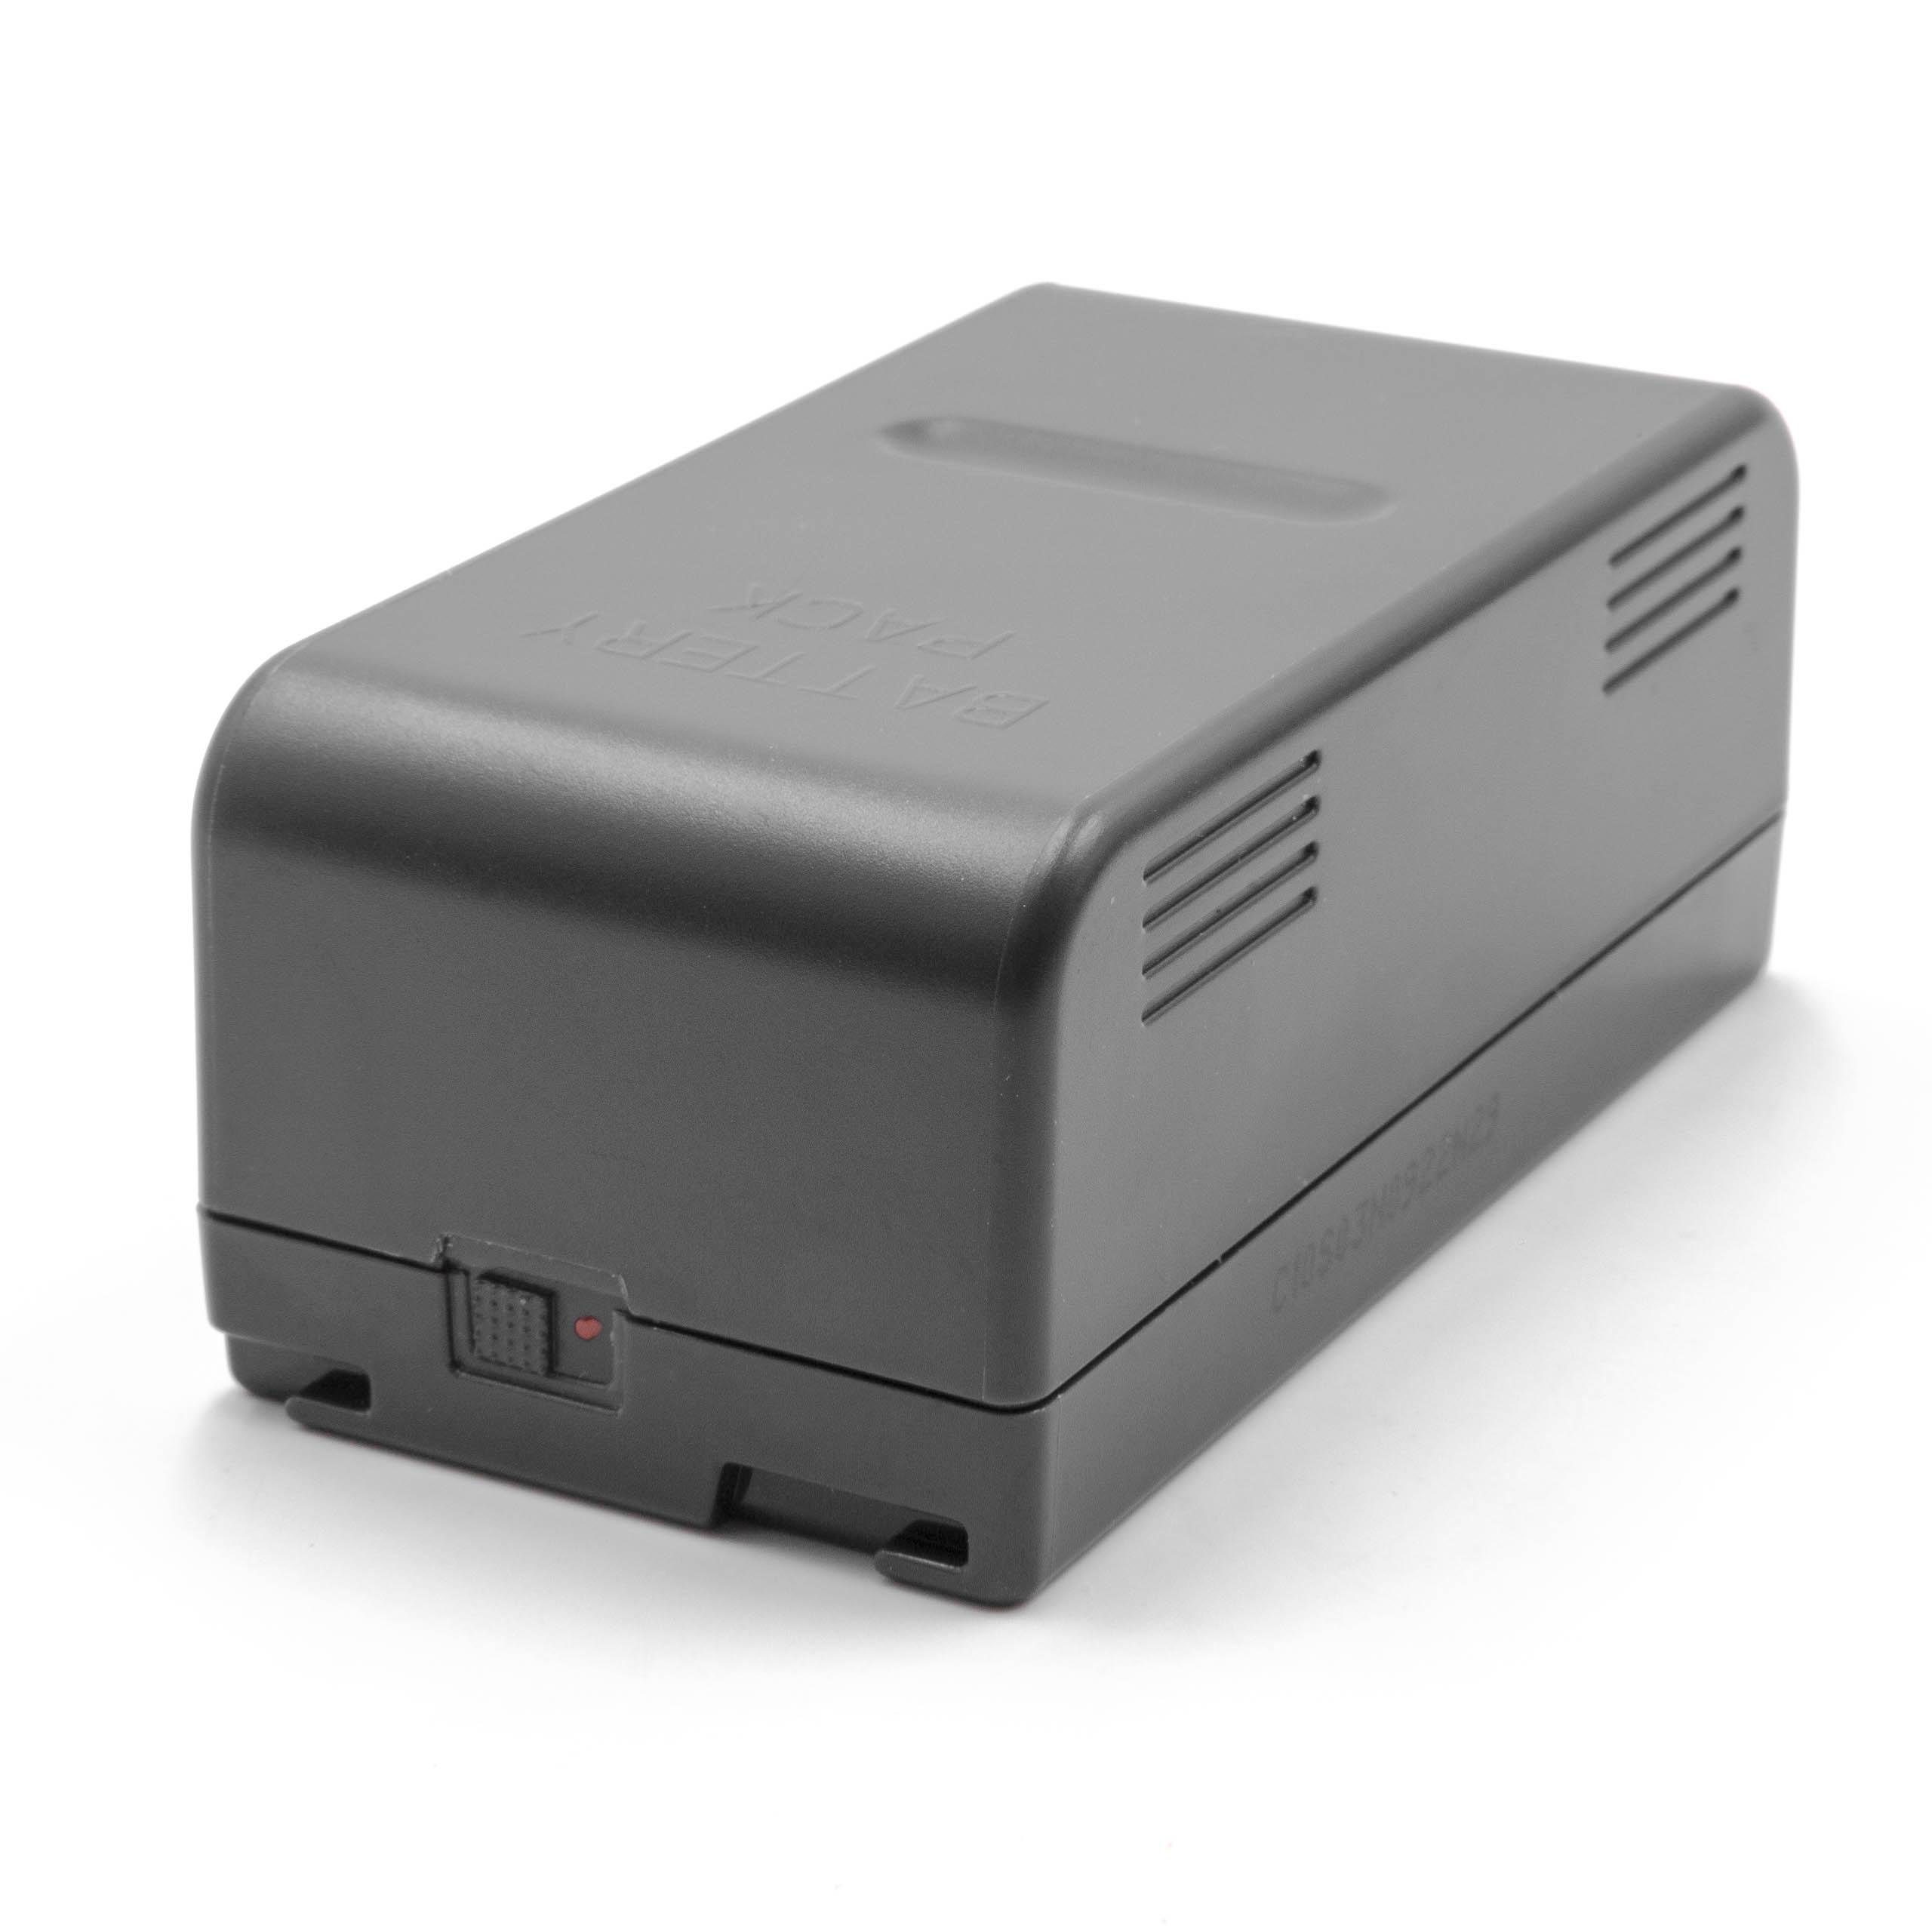 vhbw Kamera-Akku passend für Kompatibel mit RCA AutoShot CC-643, CC-645, CC-648, CC-6491, CC-710, CC-740, CC-800, CC-837 Kamera / Foto DSLR (4200mAh, 6V, NiMH) 4200 mAh